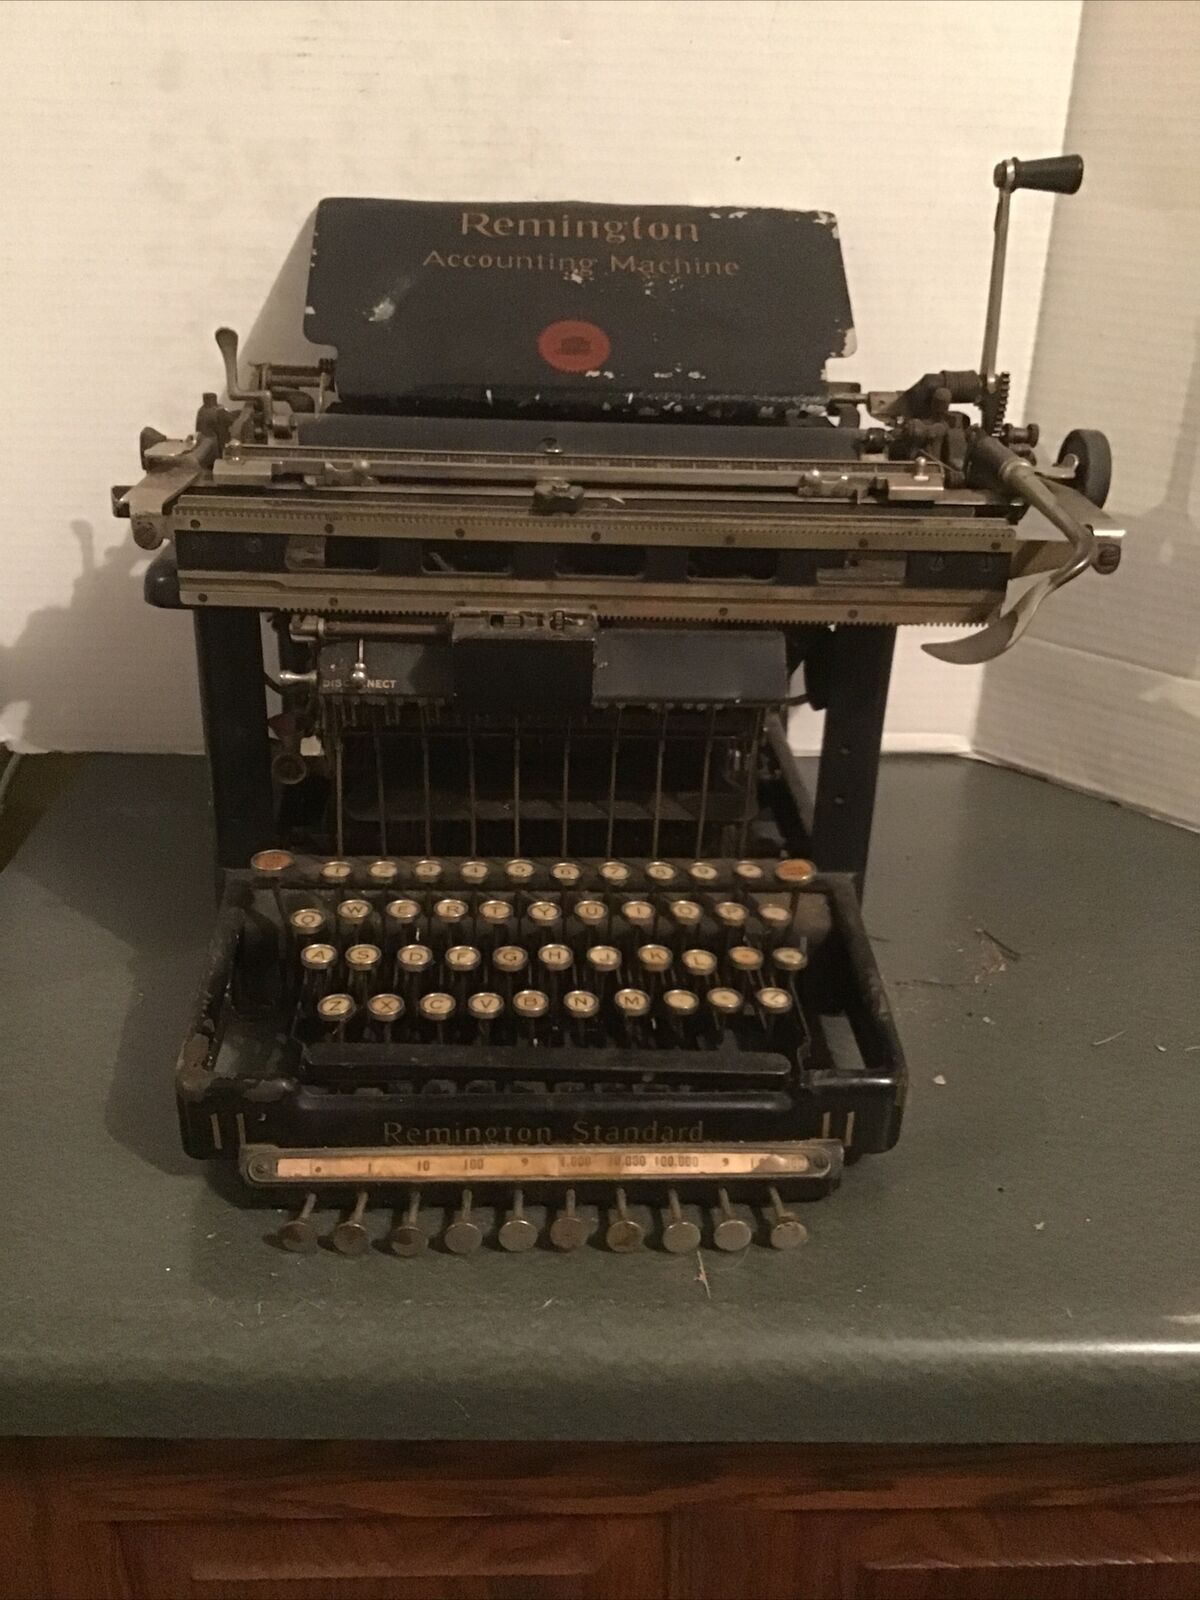 Rare REMINGTON ACCOUNTING MACHINE TYPEWRITER vintage antique needs work